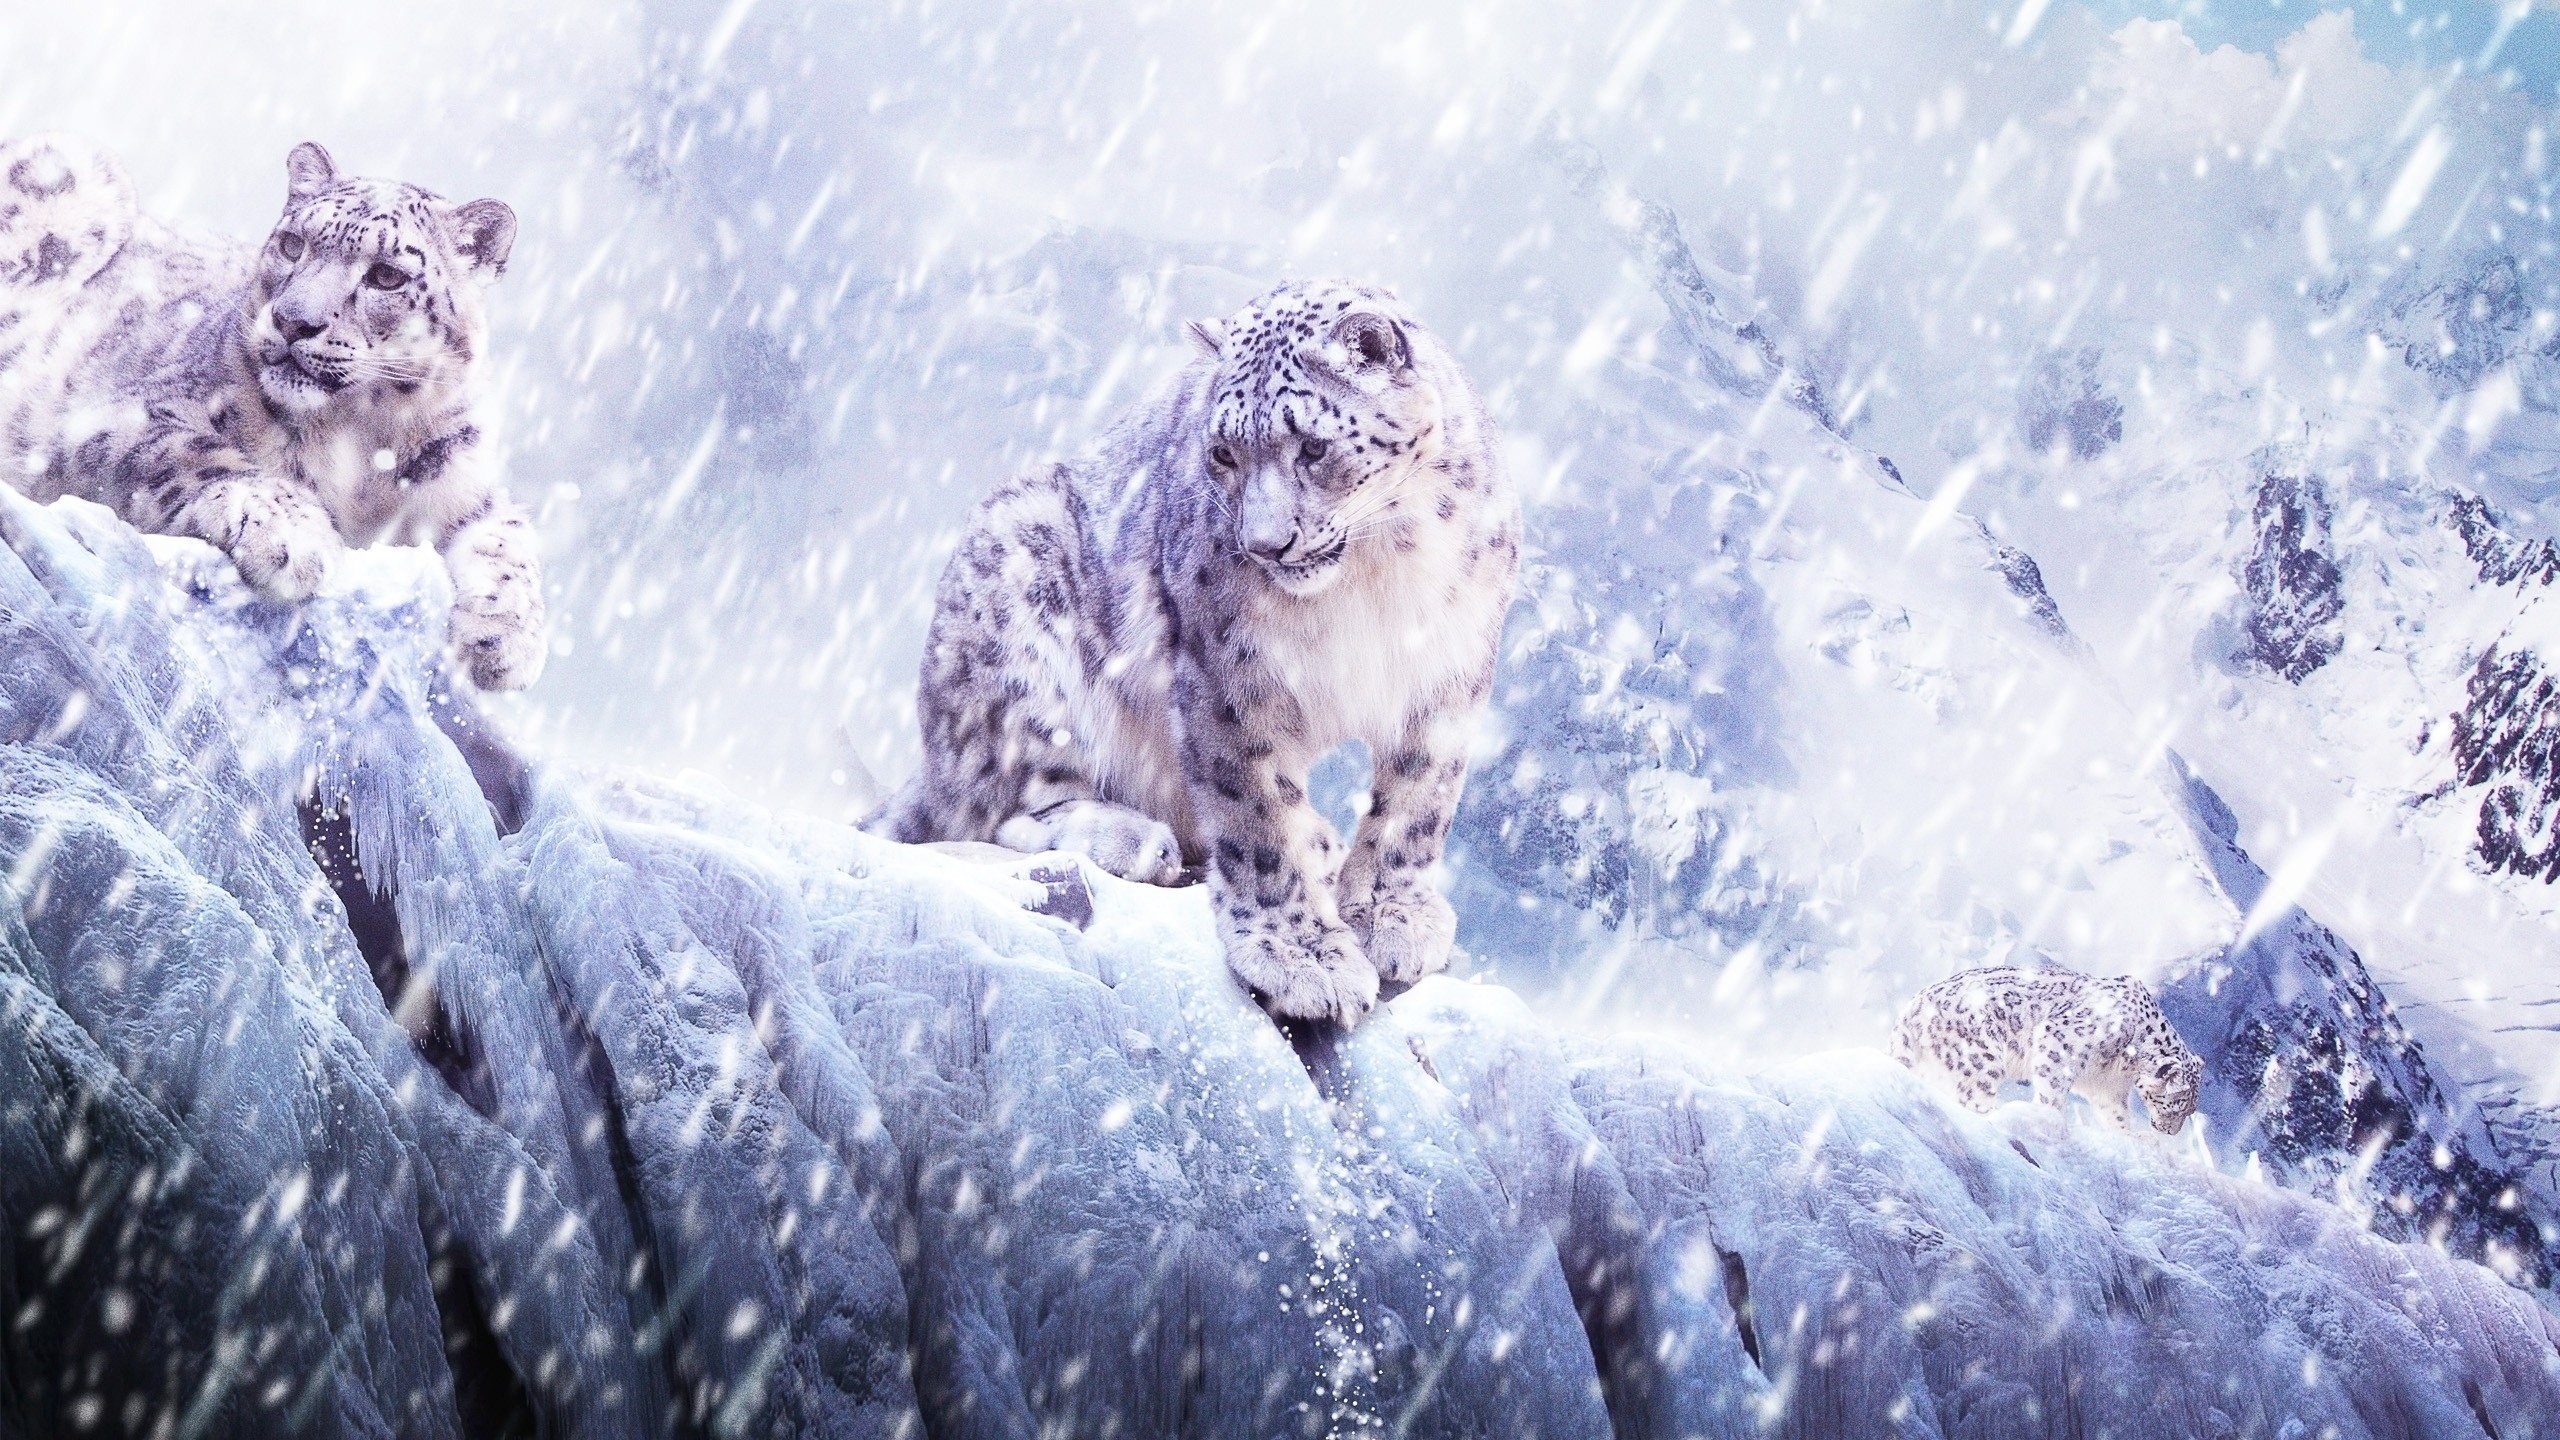 Ice Storm, Blizzard backgrounds, Free download, Ryan Peltier, 2560x1440 HD Desktop